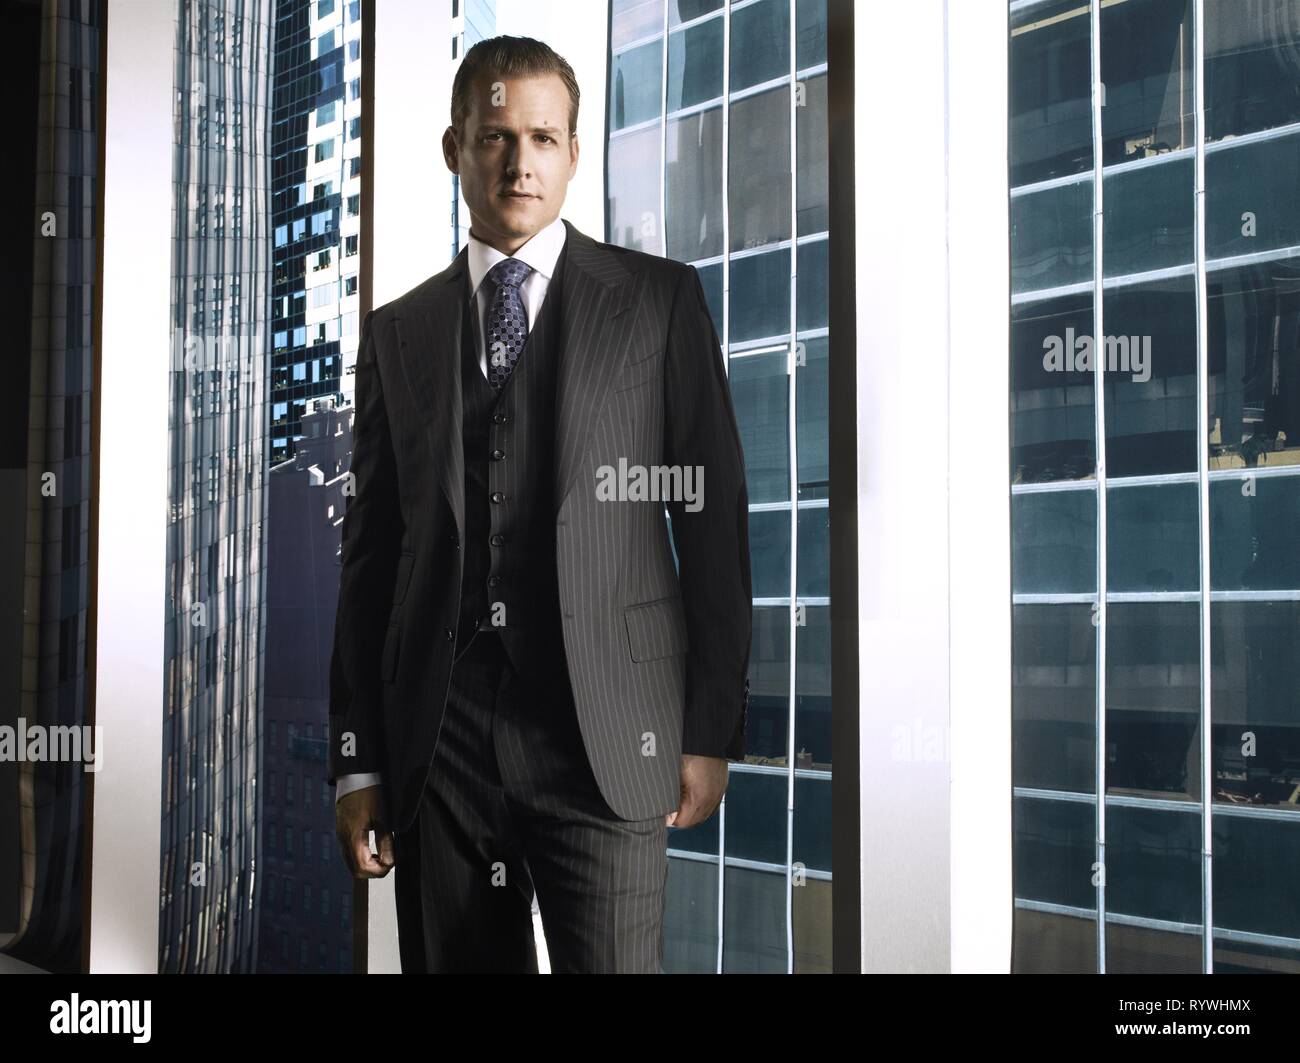 Harvey Specter Banque d'image et photos - Alamy